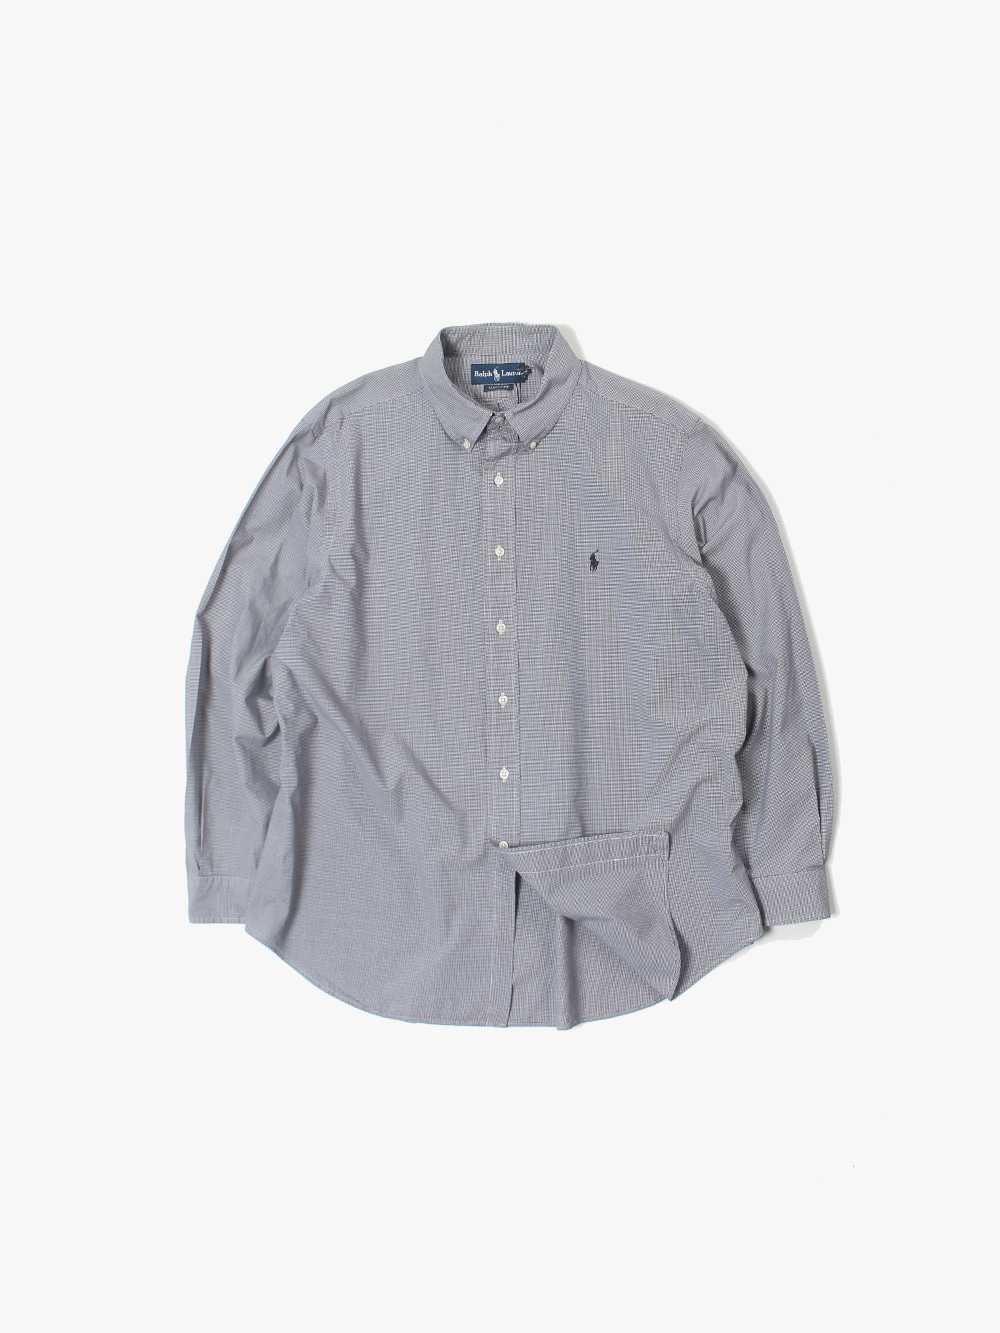 [ 100-105 ] Polo Ralph Lauren Shirt (6140)